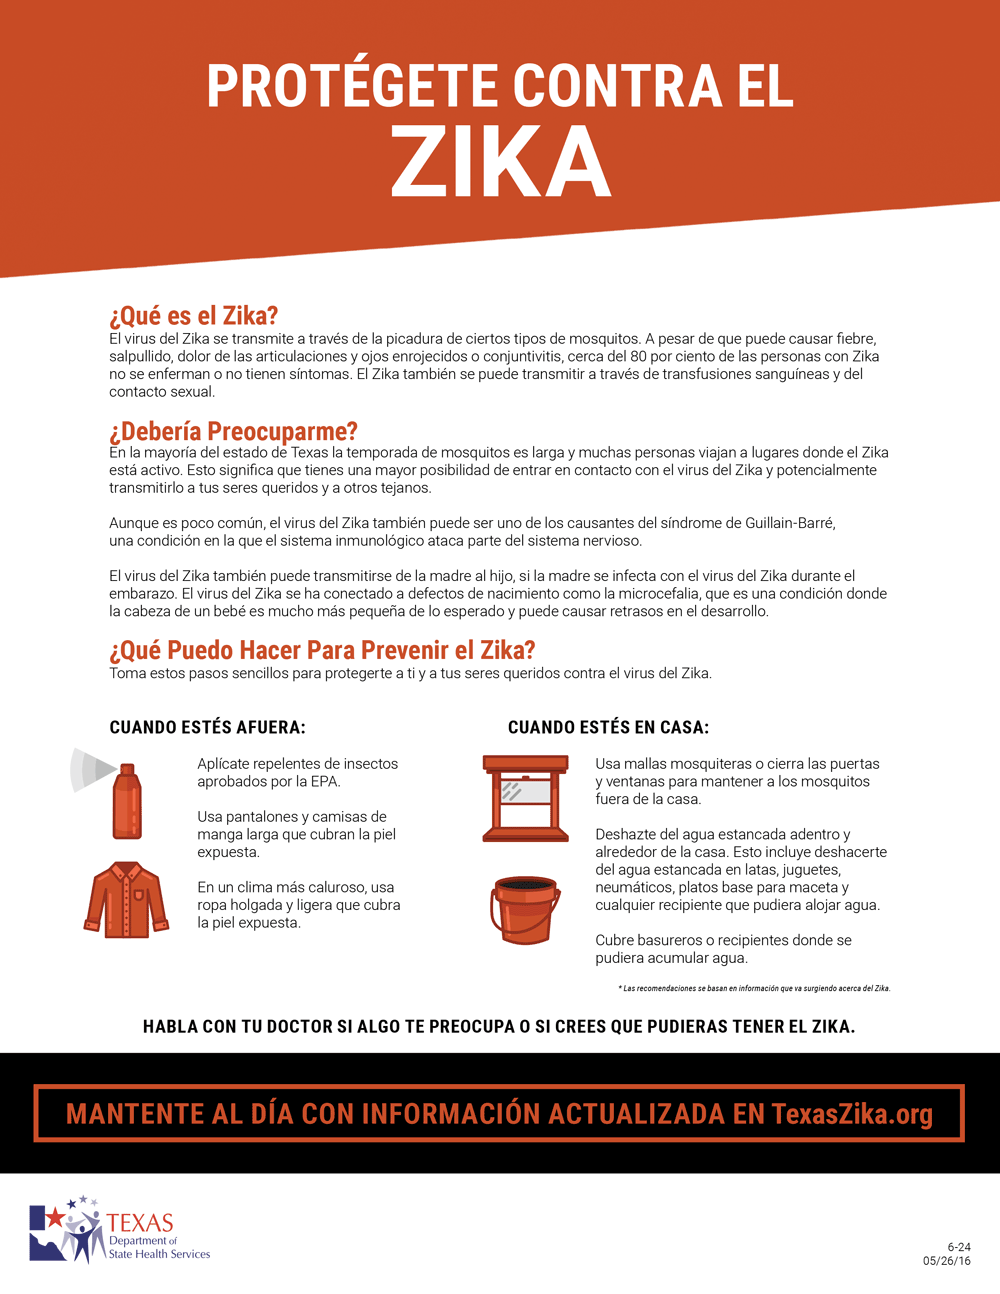 Protegete Contra el Zika